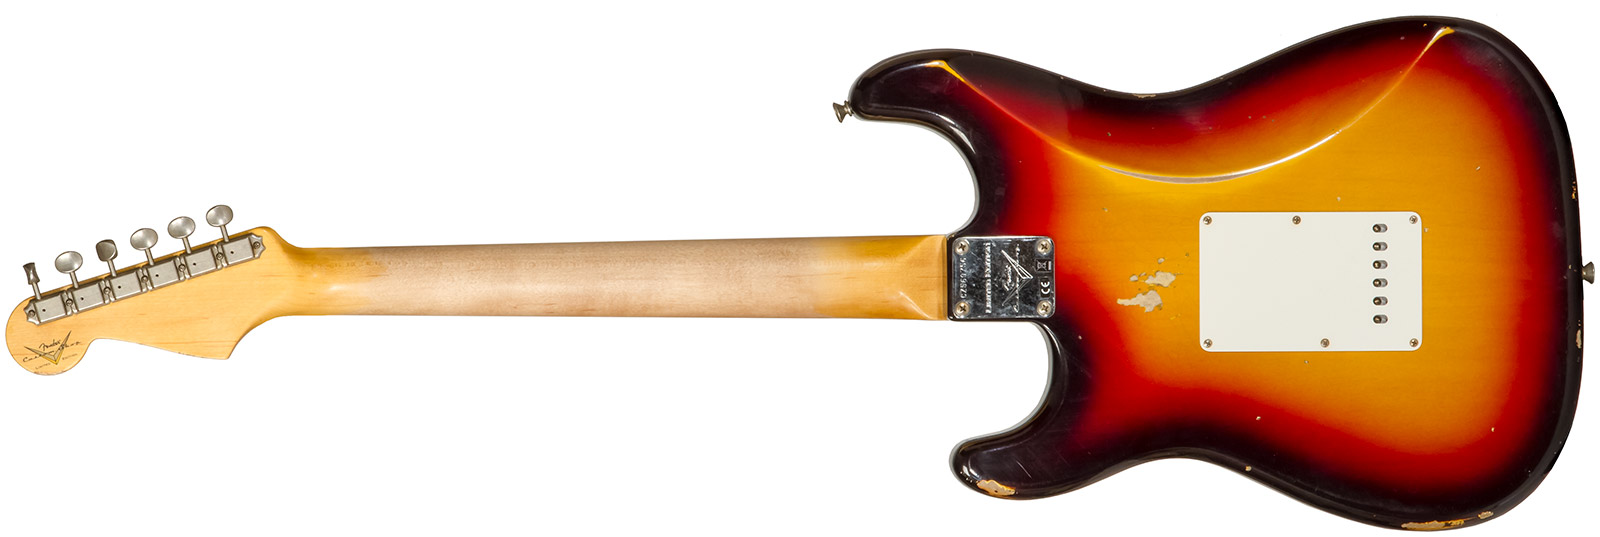 Fender Custom Shop Strat Late 1964 3s Trem Rw #cz569756 - Relic Target 3-color Sunburst - Elektrische gitaar in Str-vorm - Variation 1